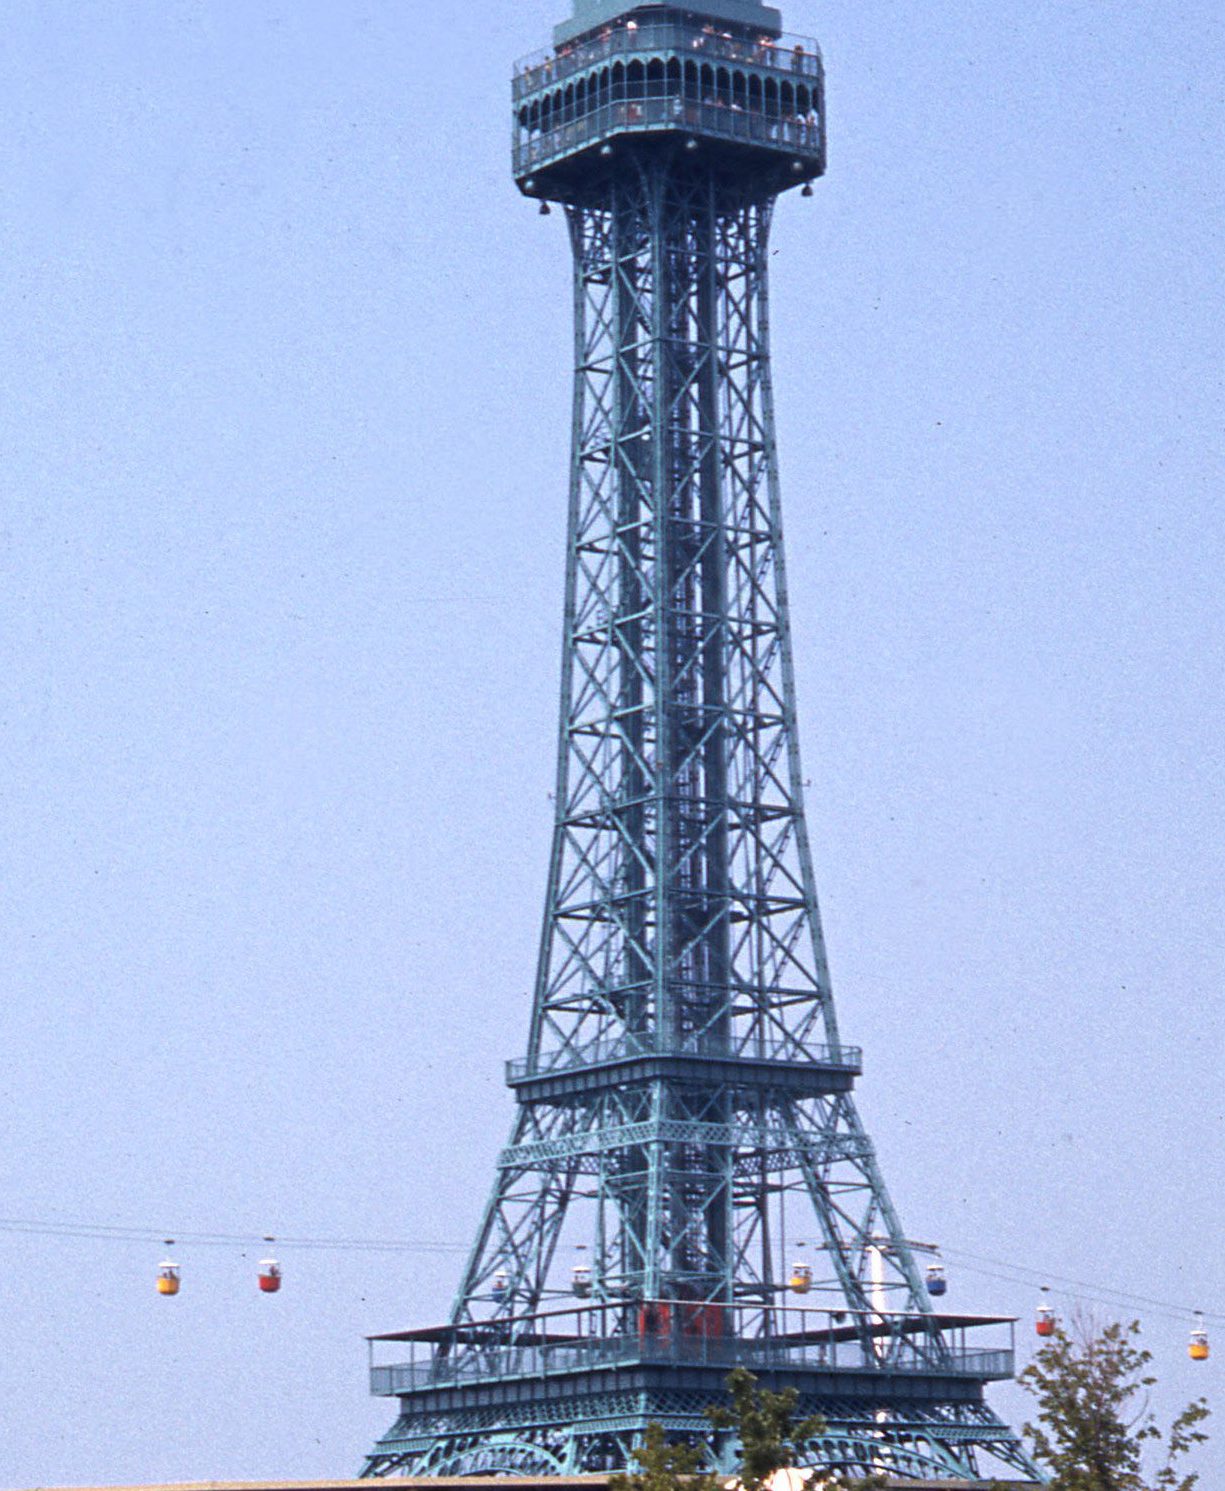 King's Island's Eiffel Tower Replica - Taken in 1972